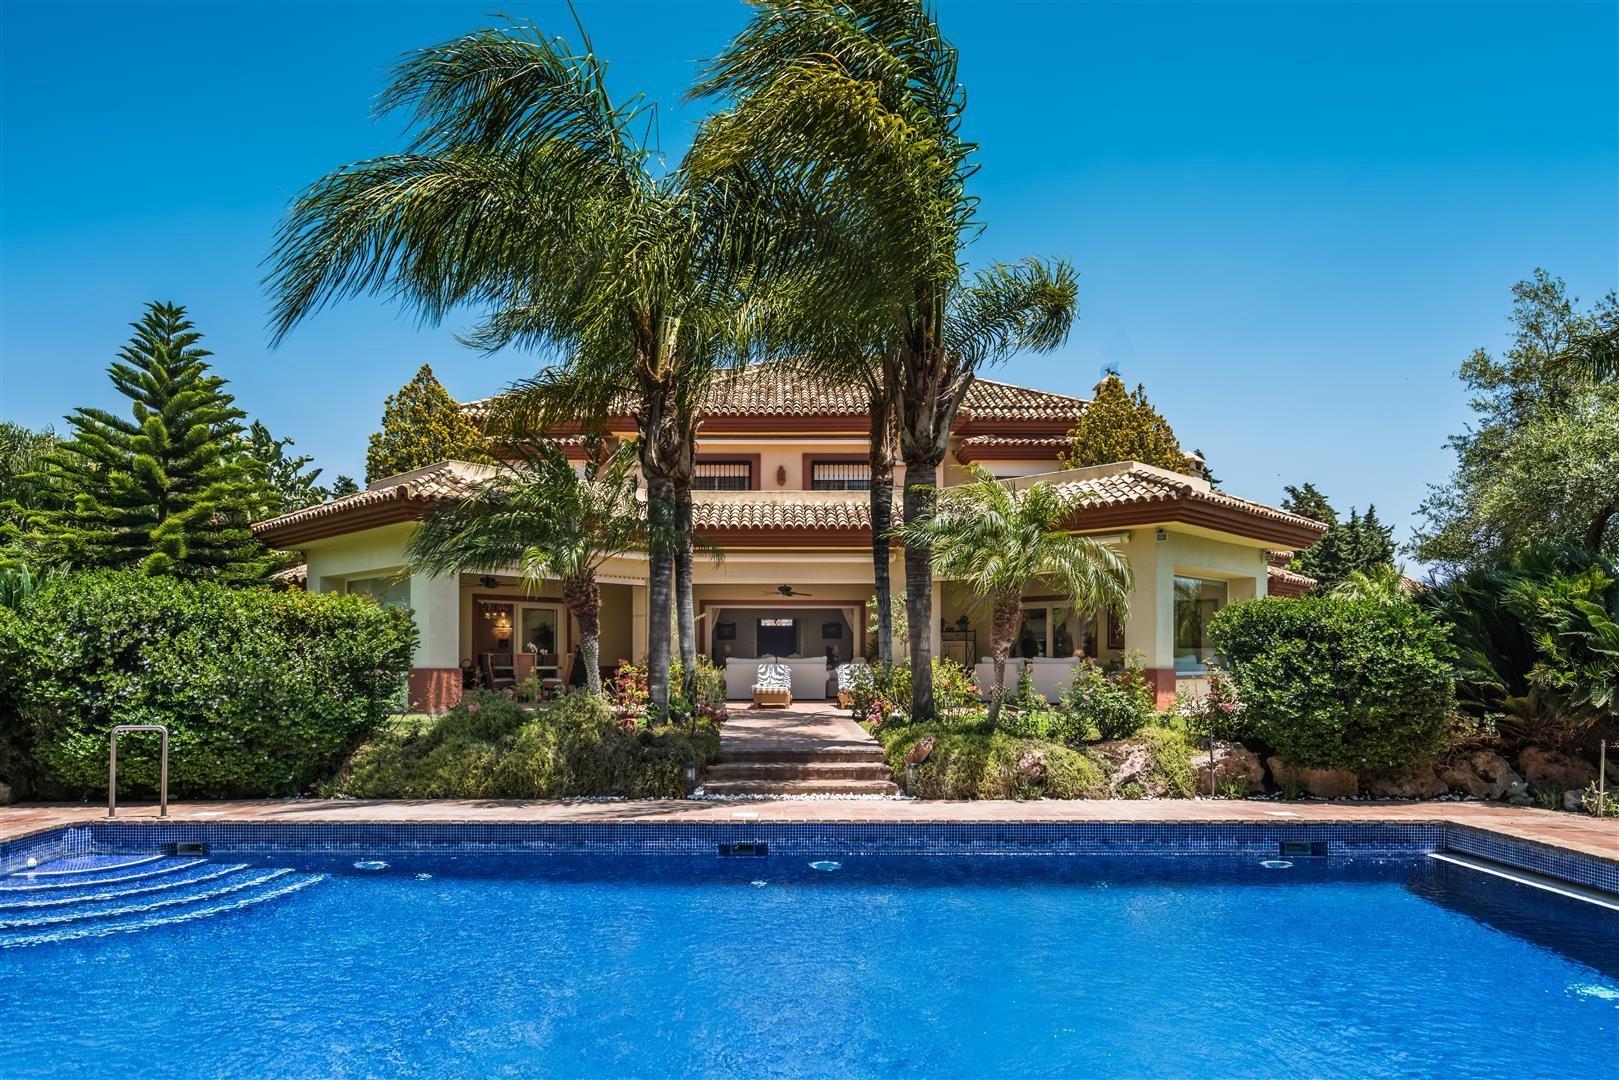 Villa for sale Marbella West Spain (20) (Large) (Large)